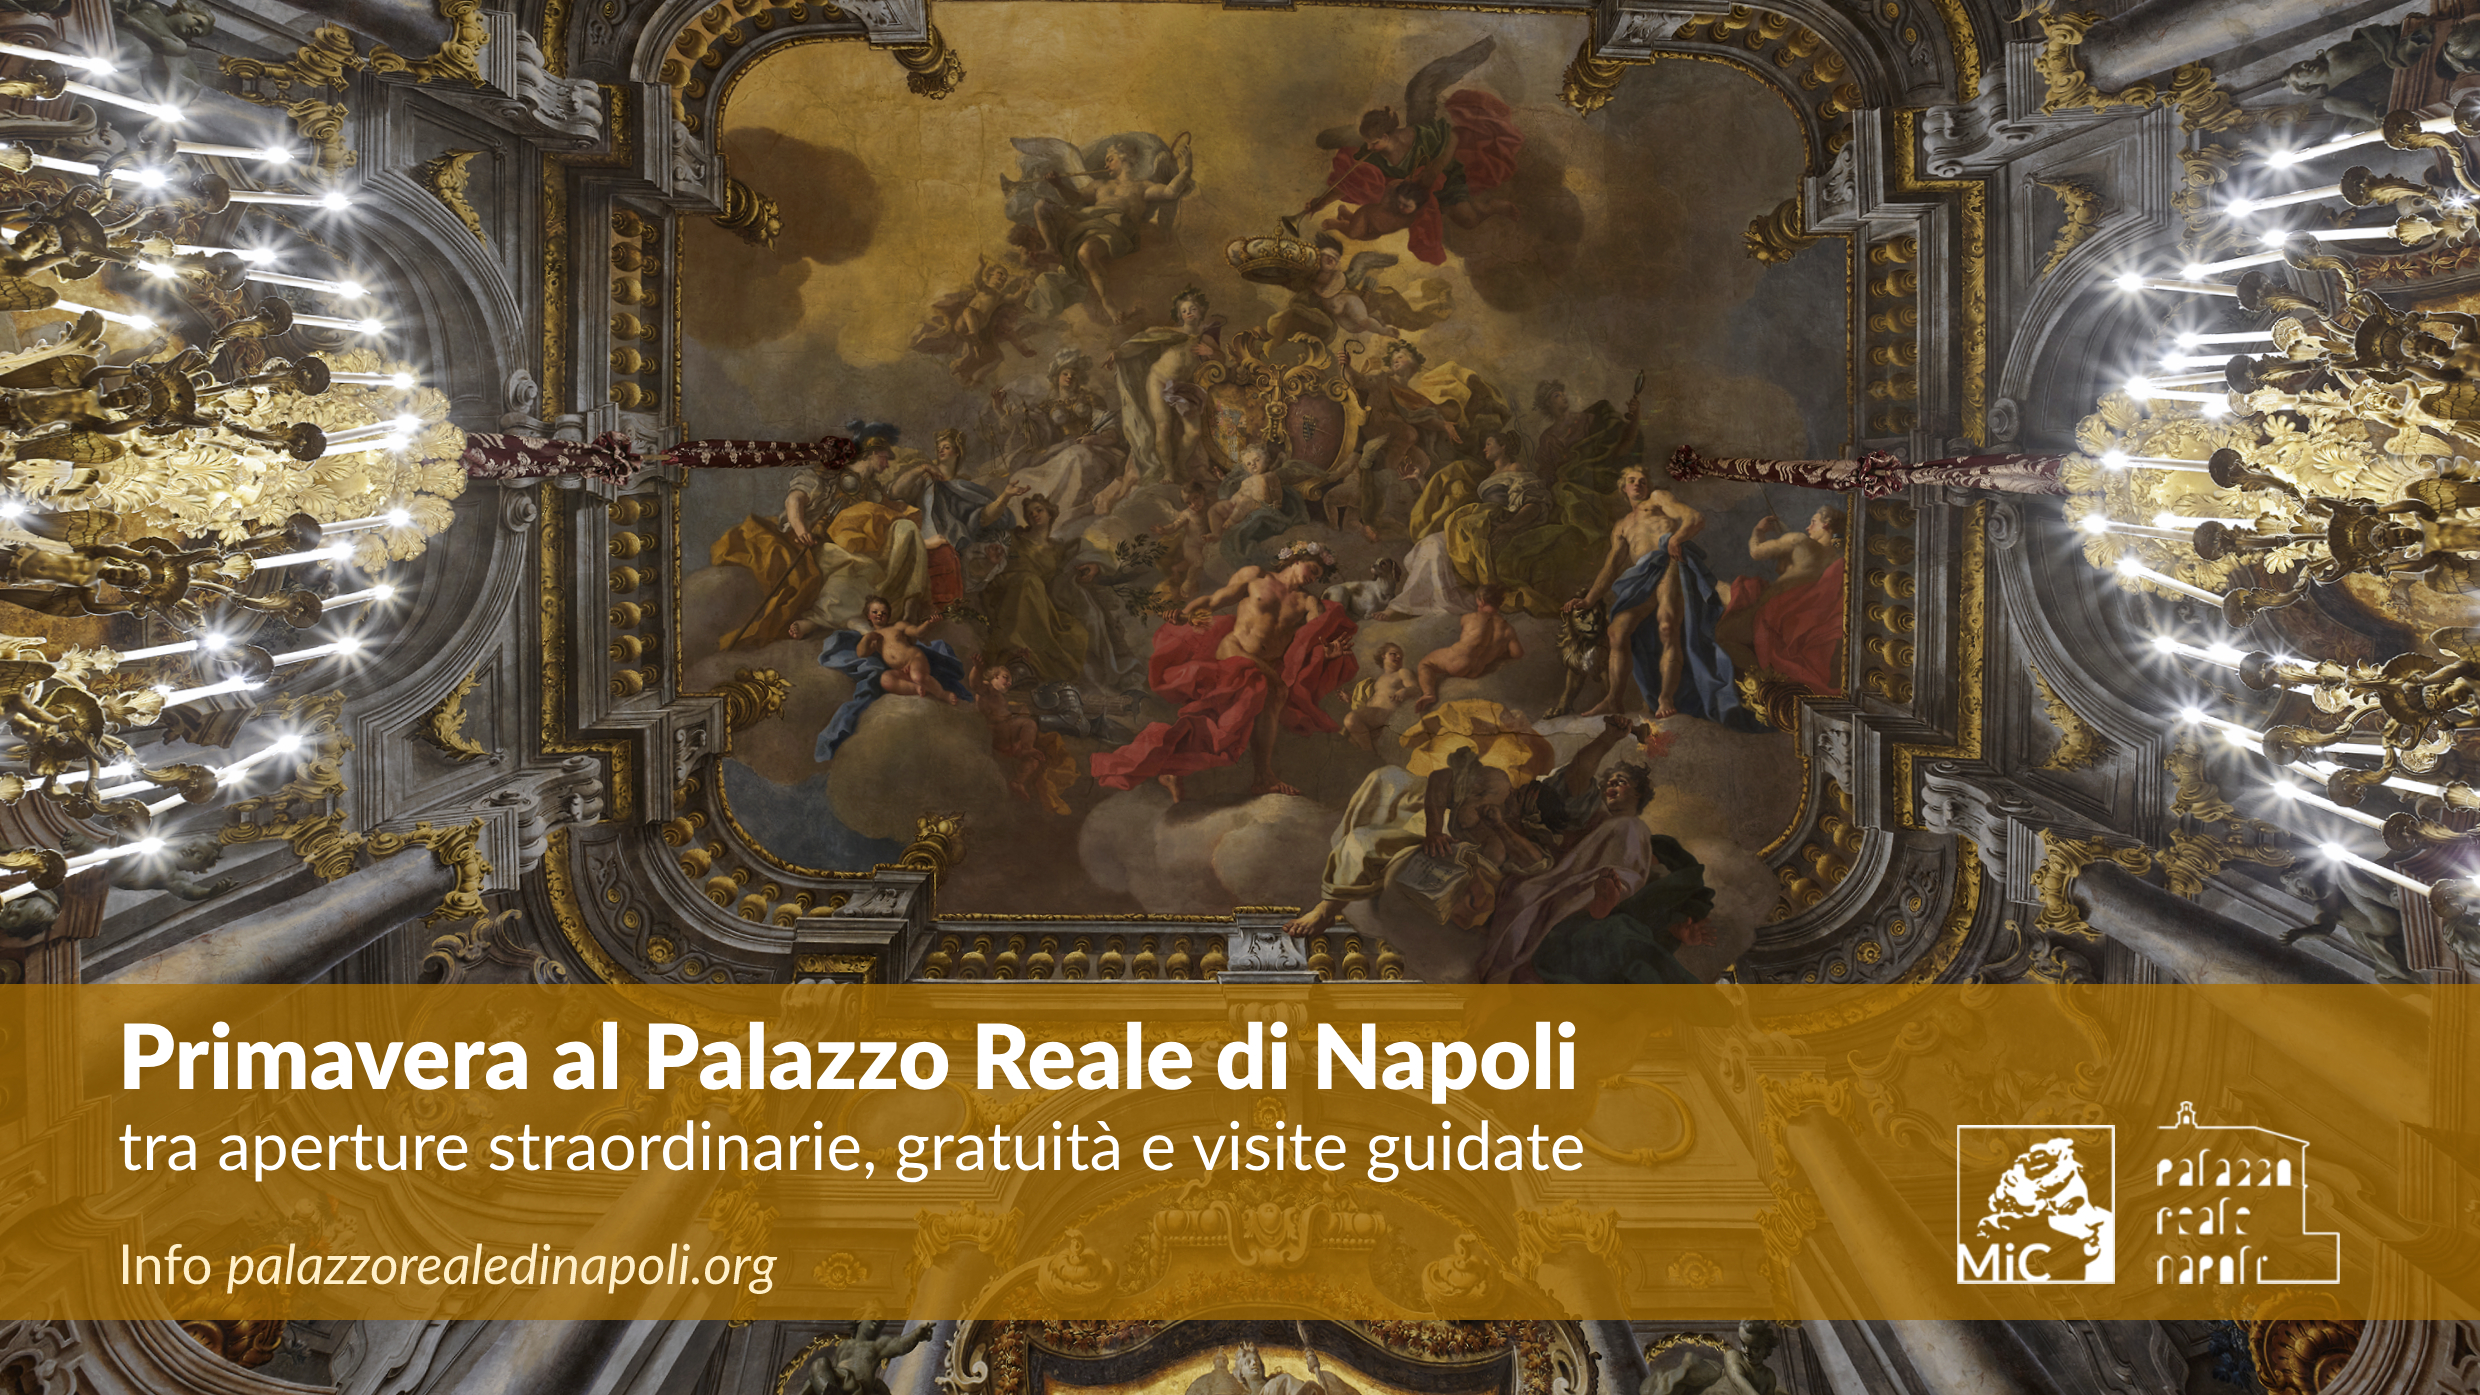 Primavera al Palazzo Reale di Napoli tra aperture straordinarie, gratuità e visite guidate